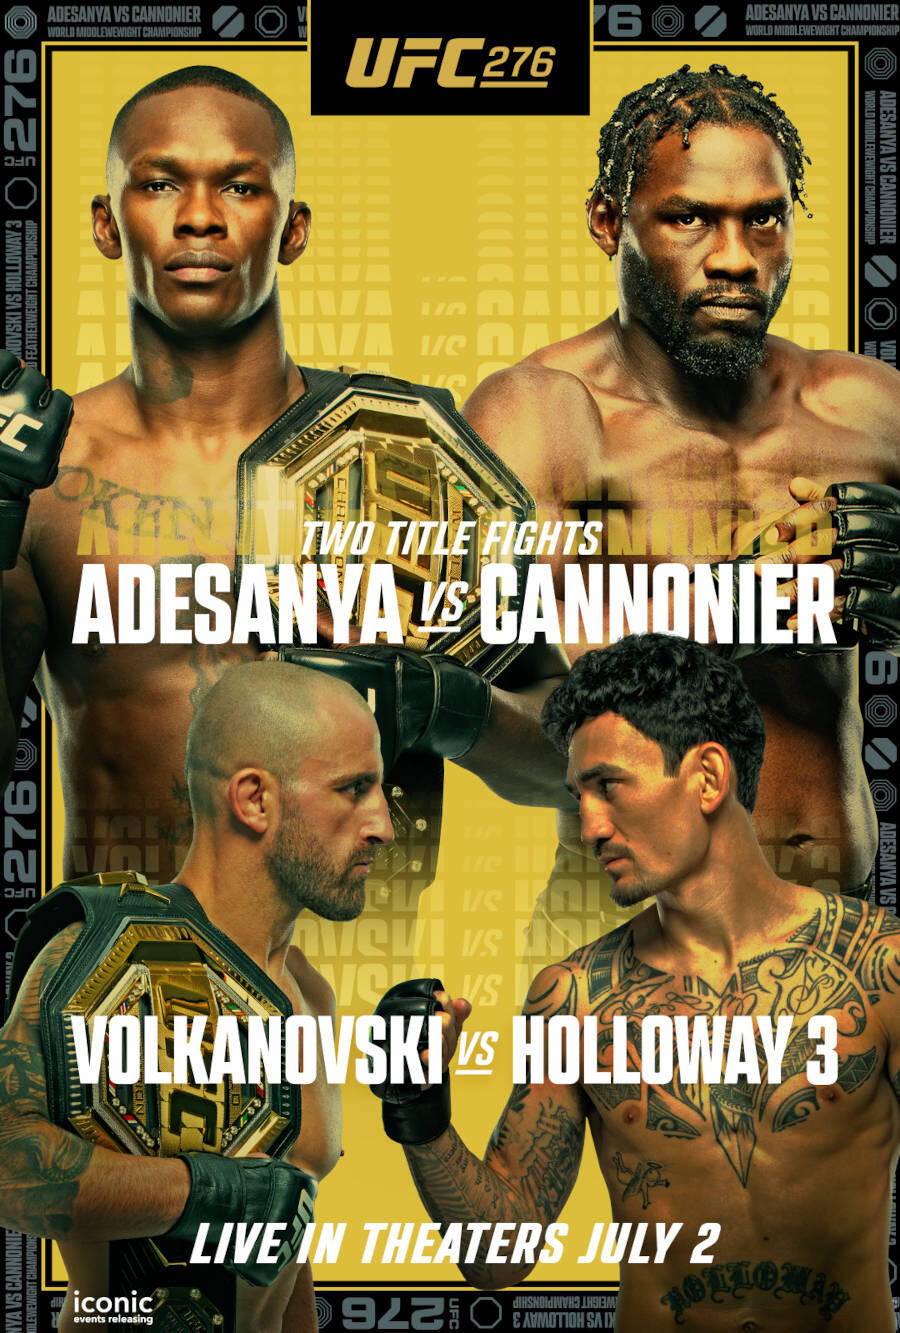 UFC 276 Adesanya vs